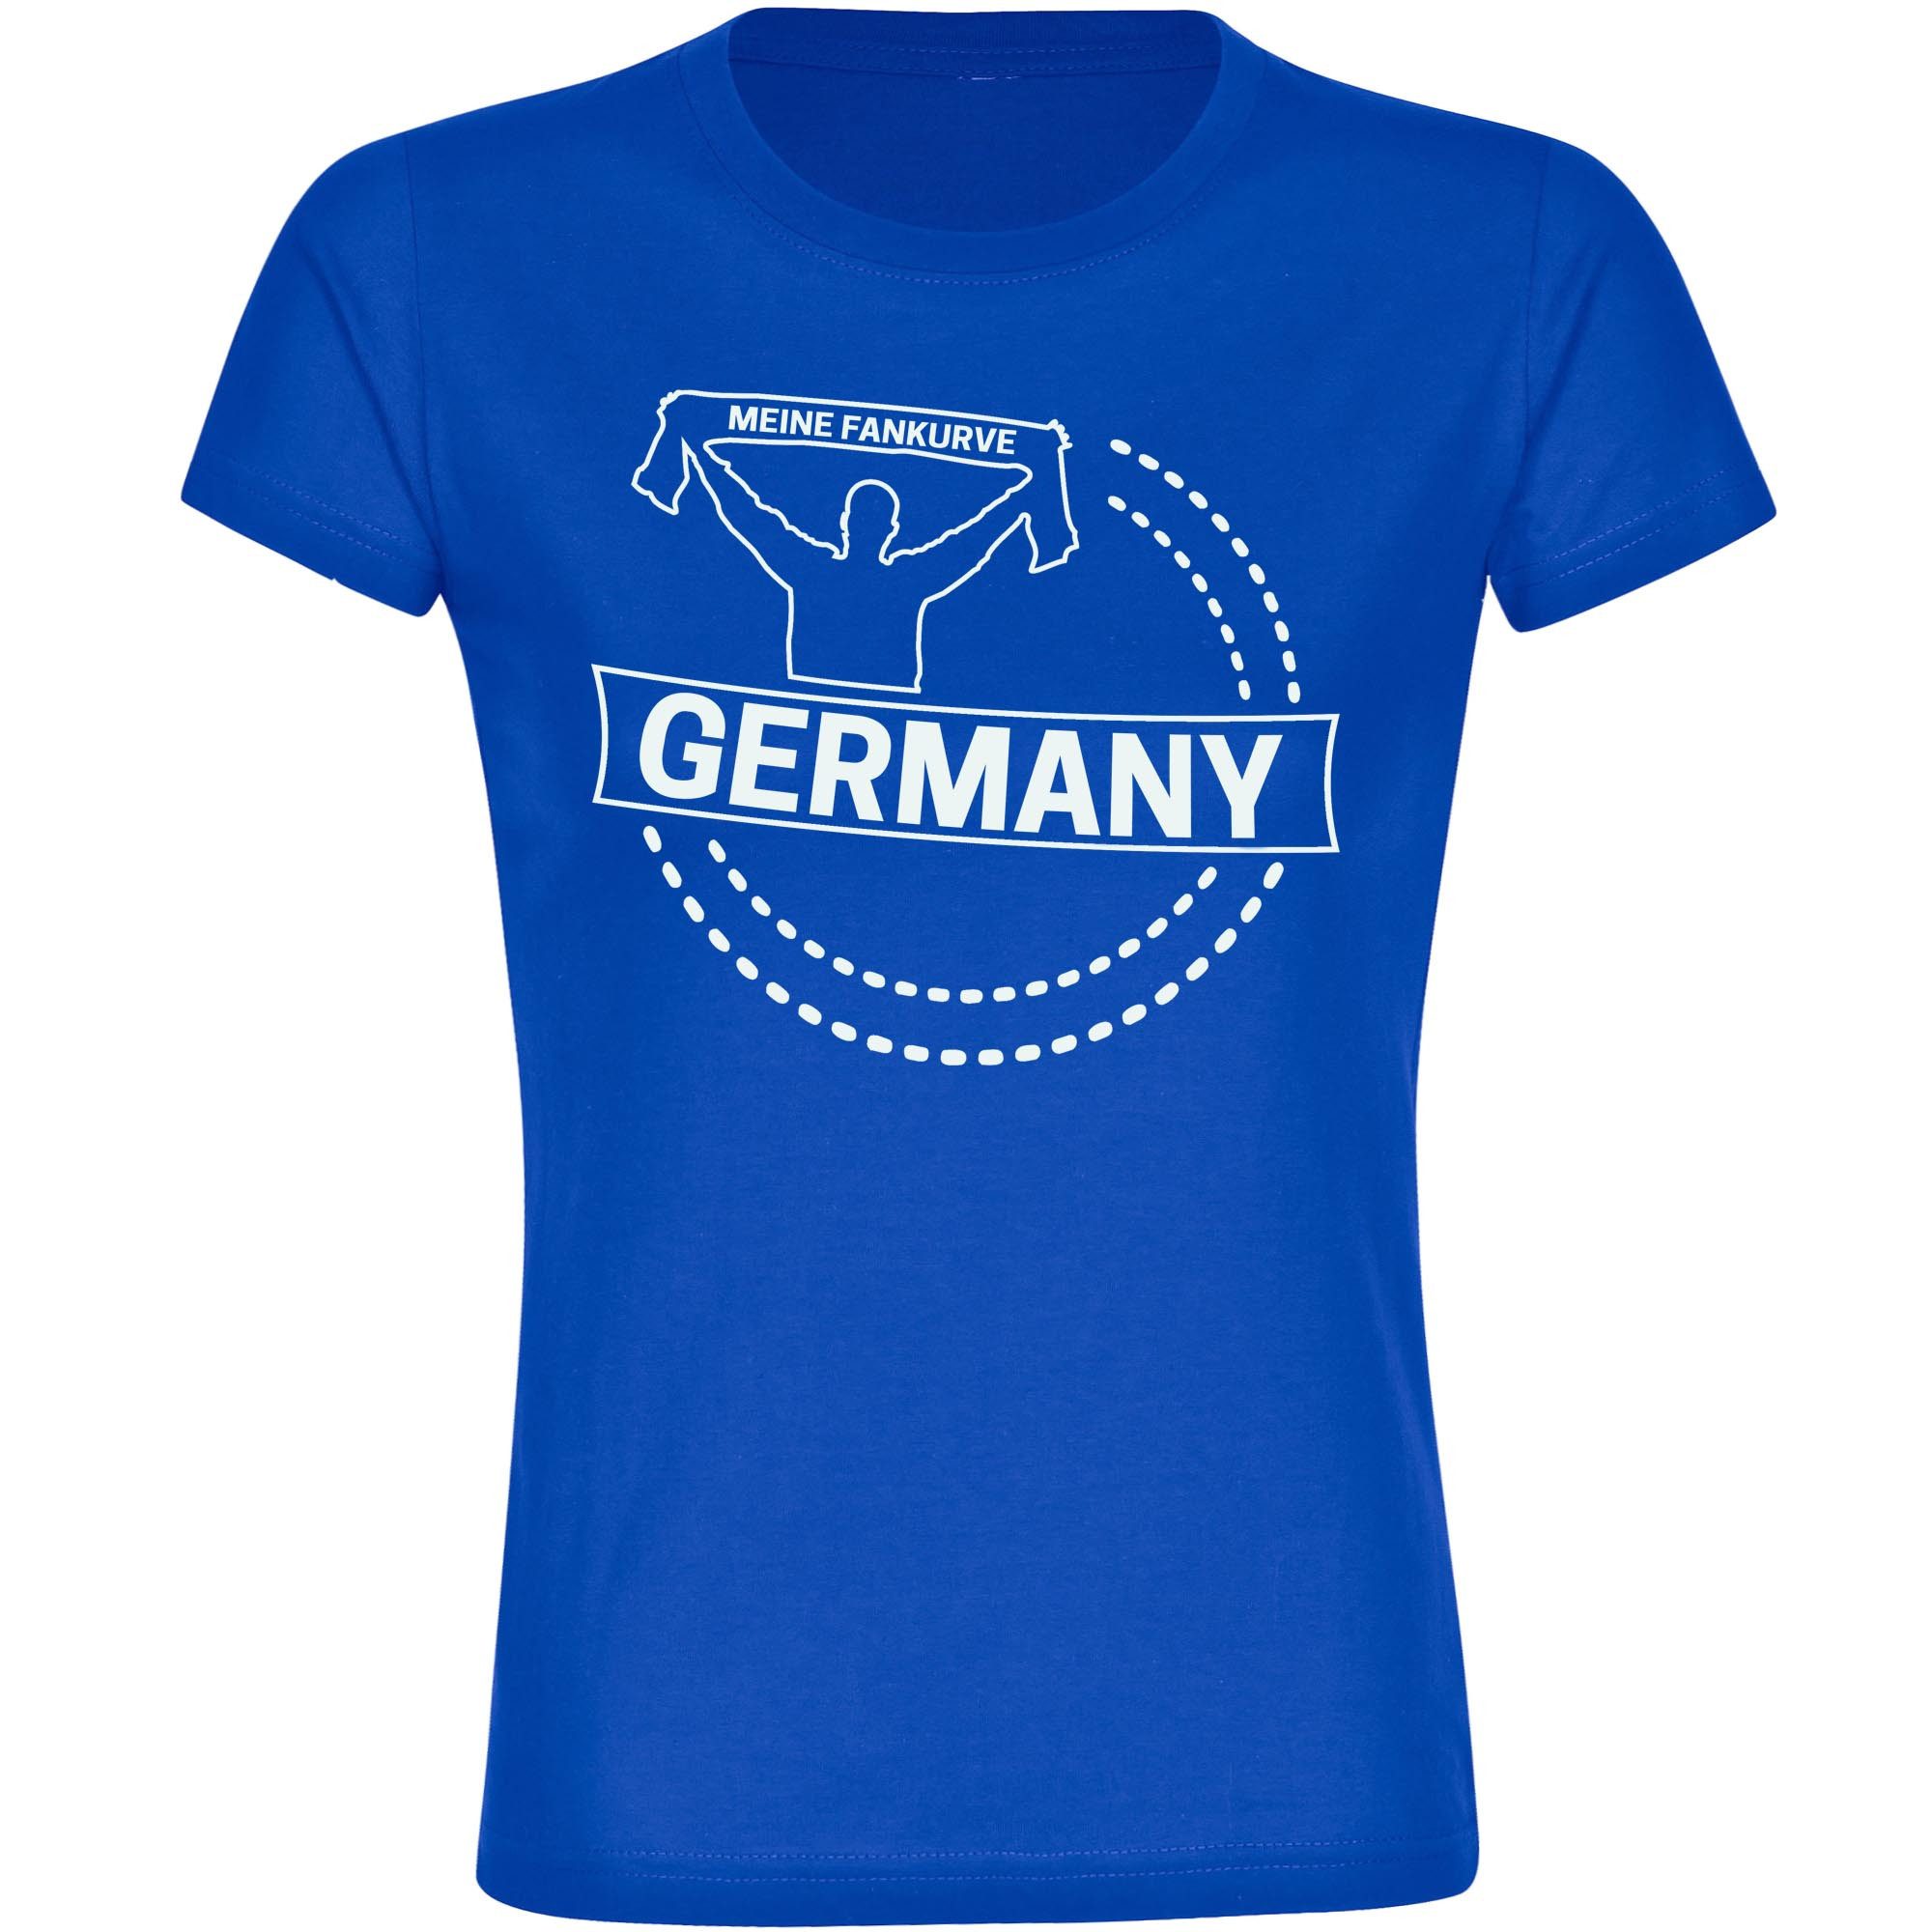 multifanshop T-Shirt Damen Germany - Meine Fankurve - Frauen